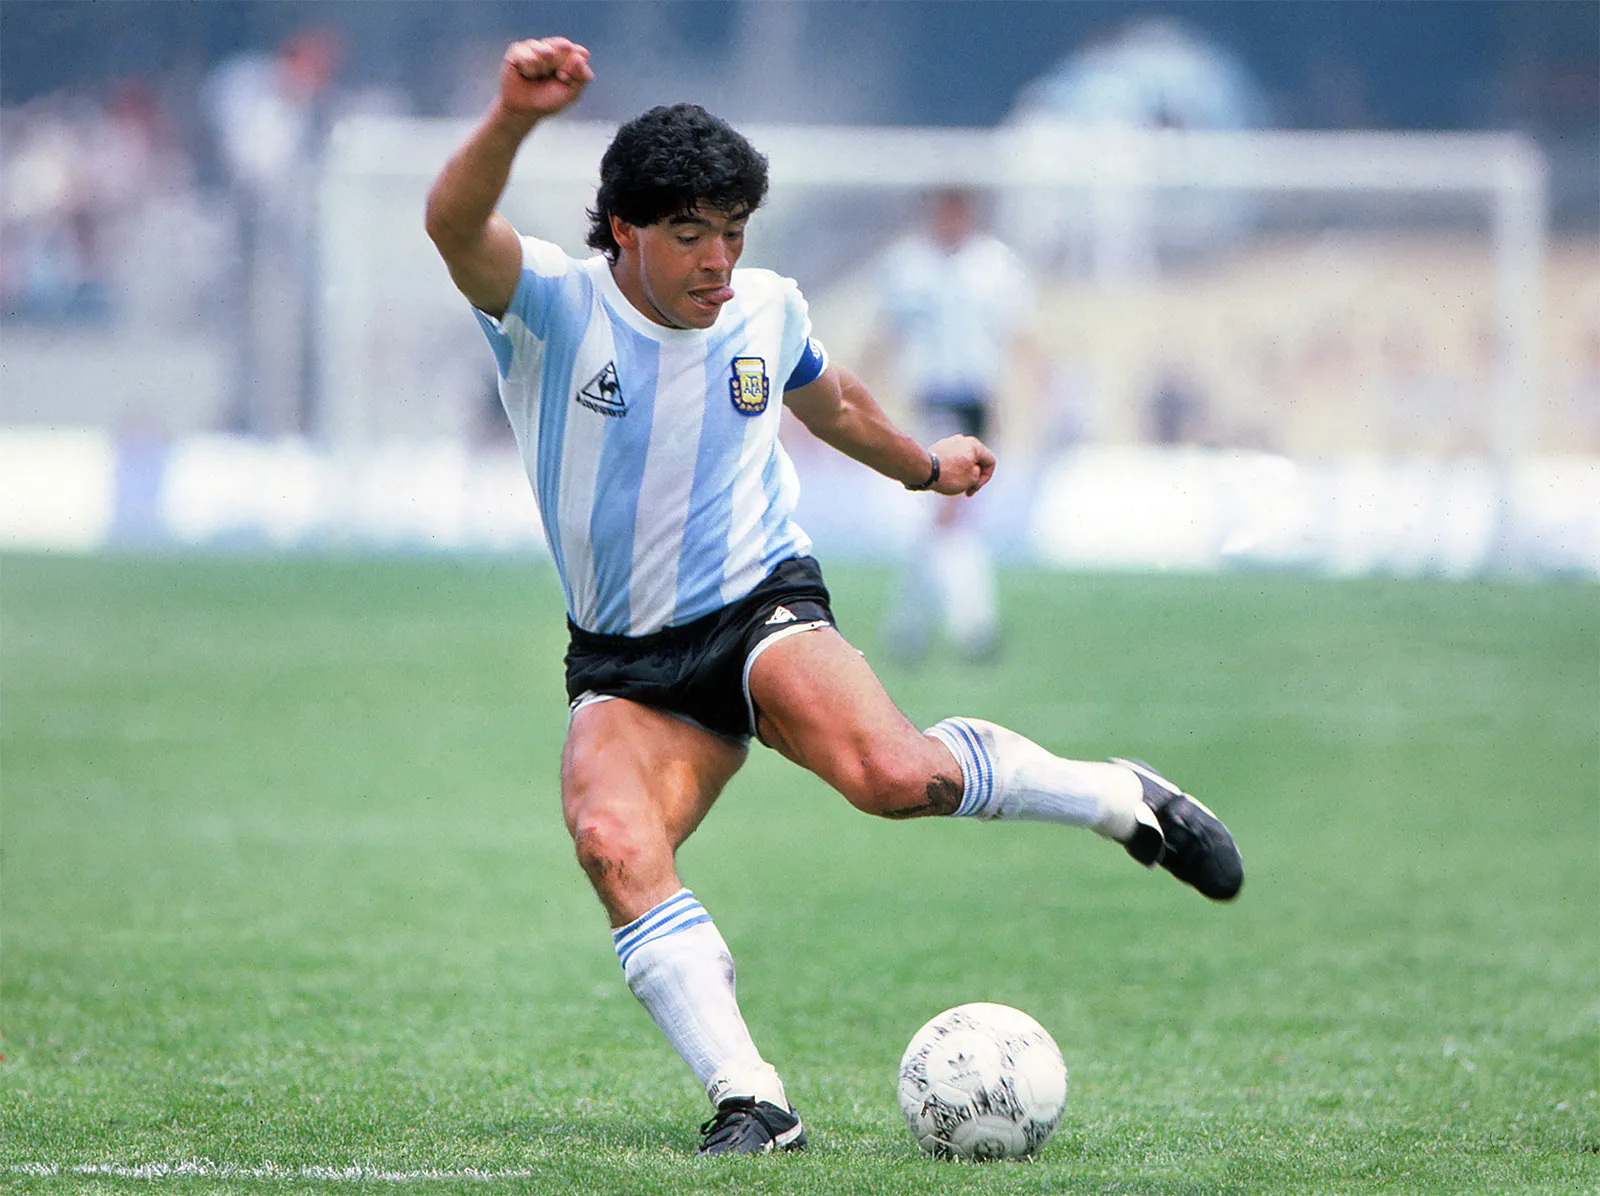 La herencia de Diego Maradona: fortuna, bienes, contratos e inversiones